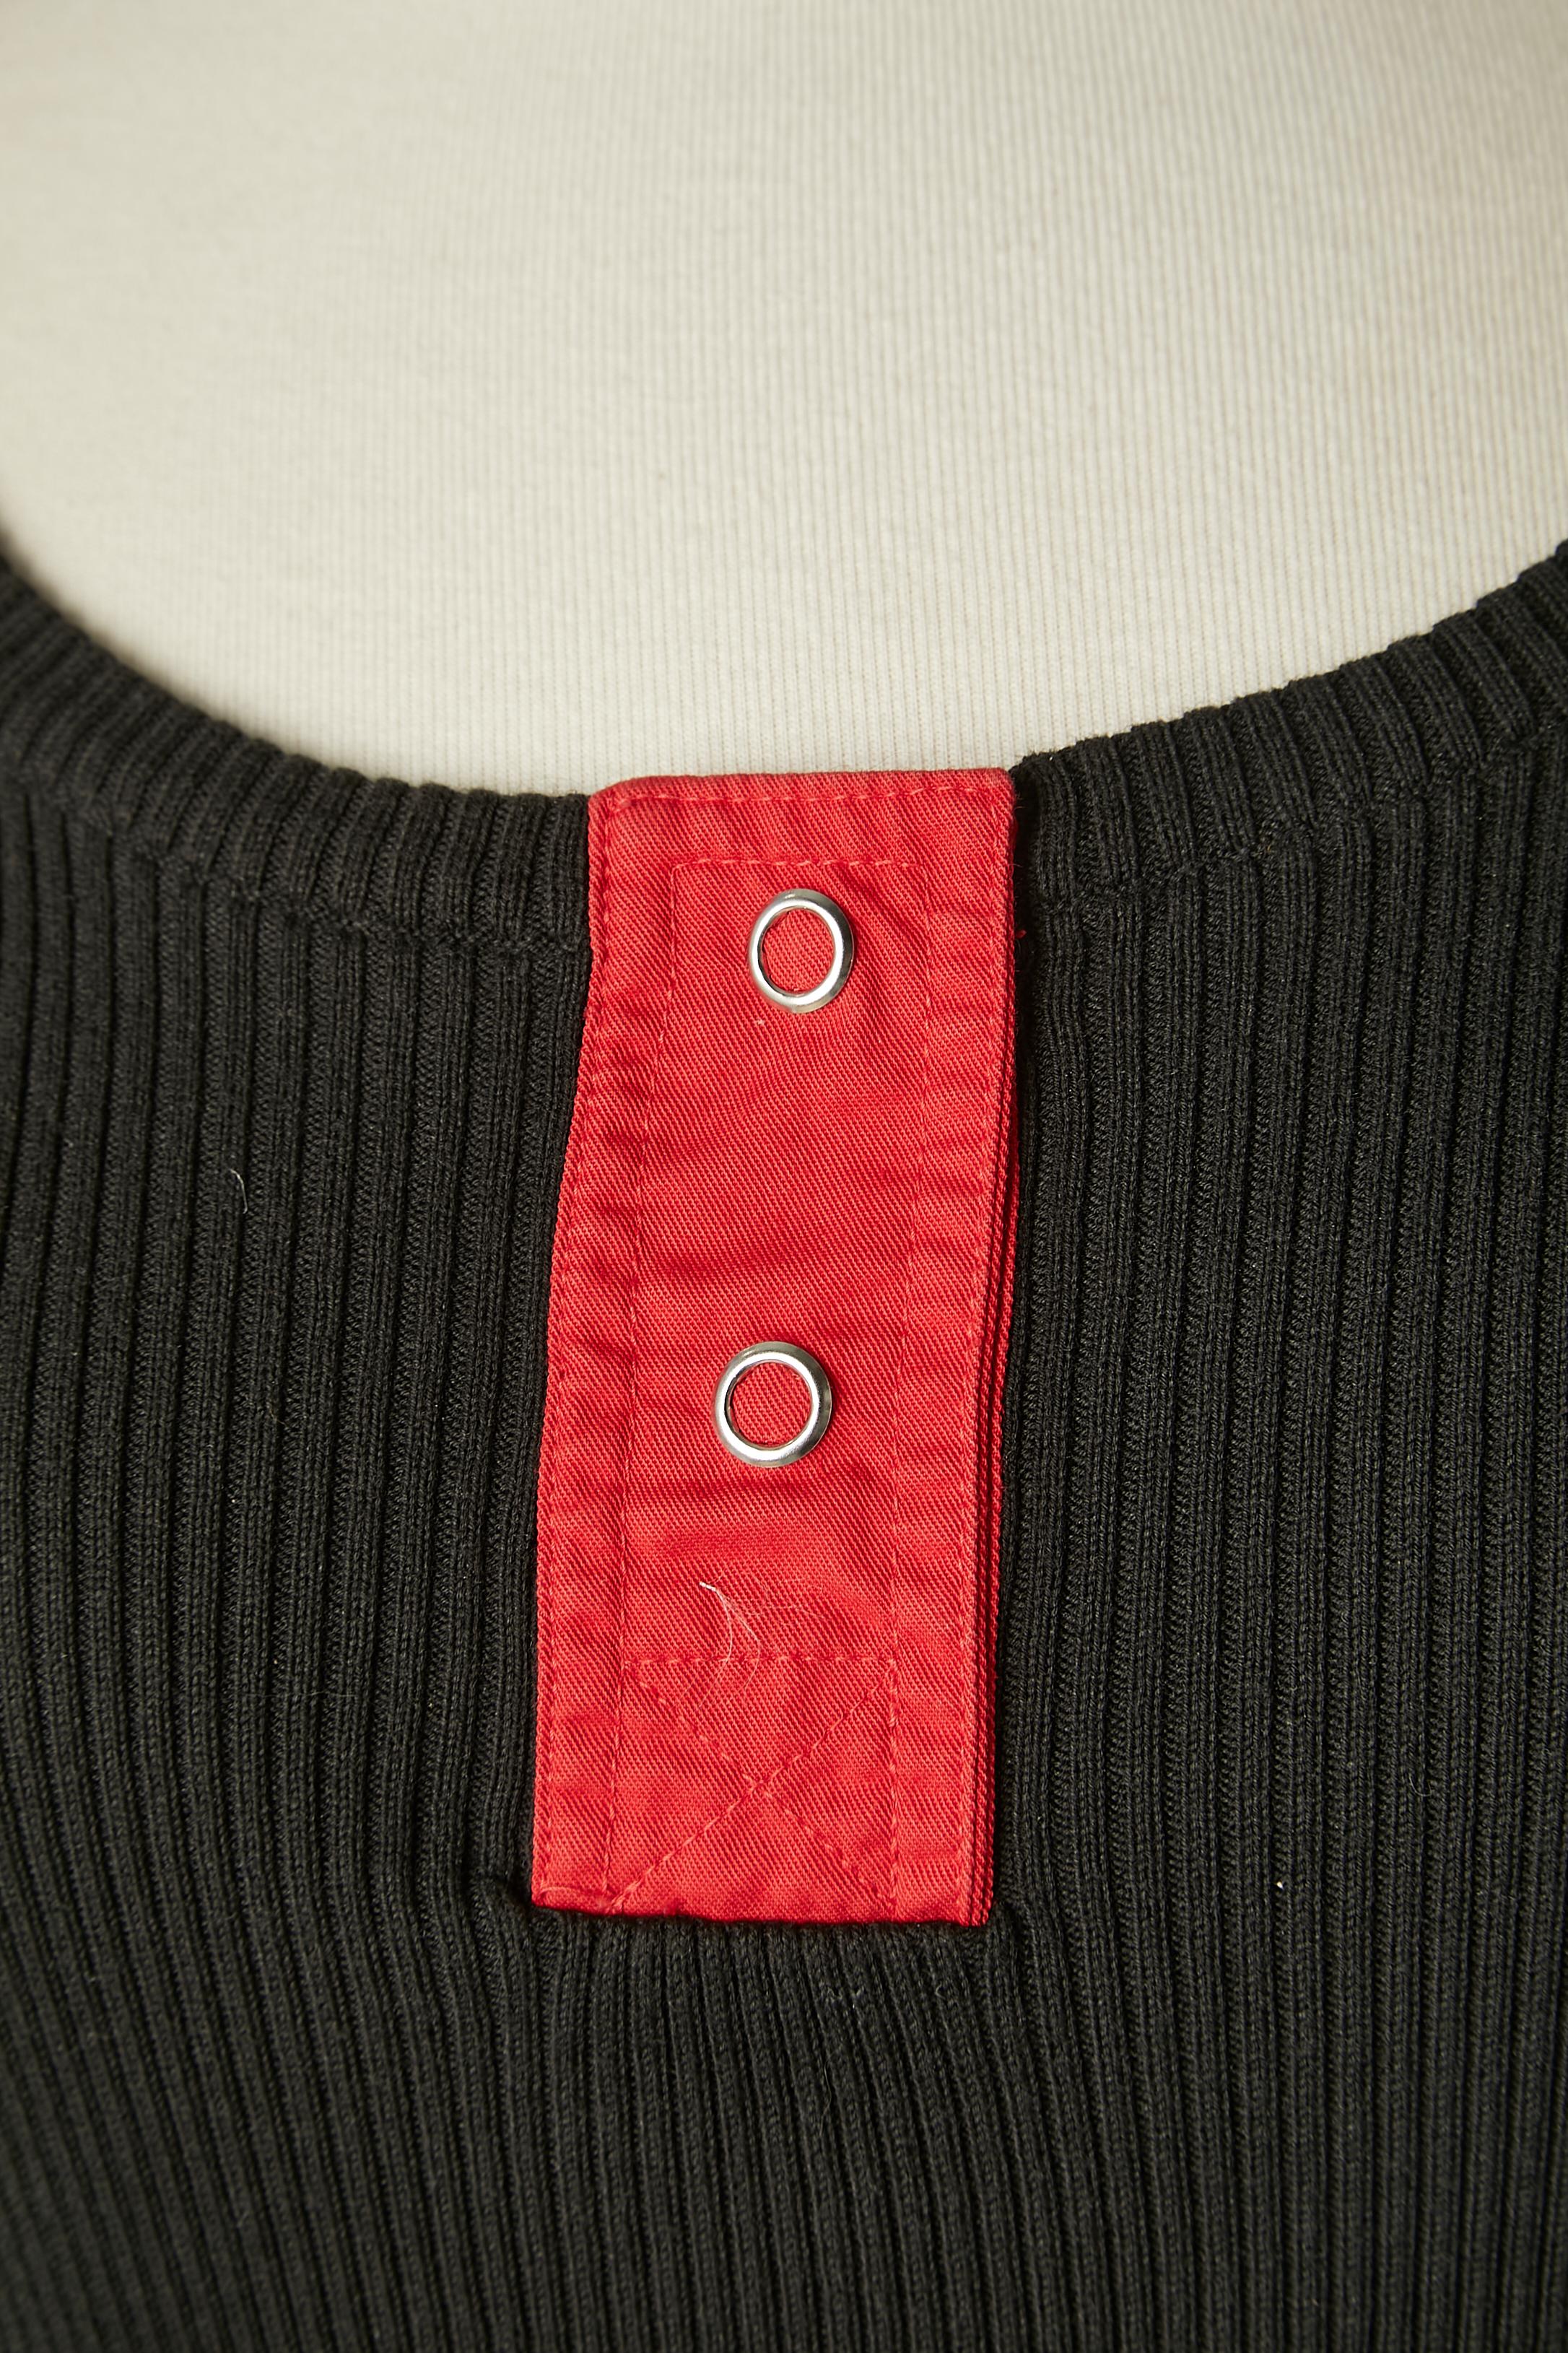 Tee-shirt noir avec manches rouges et orange. Encliqueter la partie supérieure au milieu de l'avant.
TAILLE 42 (It) 38 (Fr) 